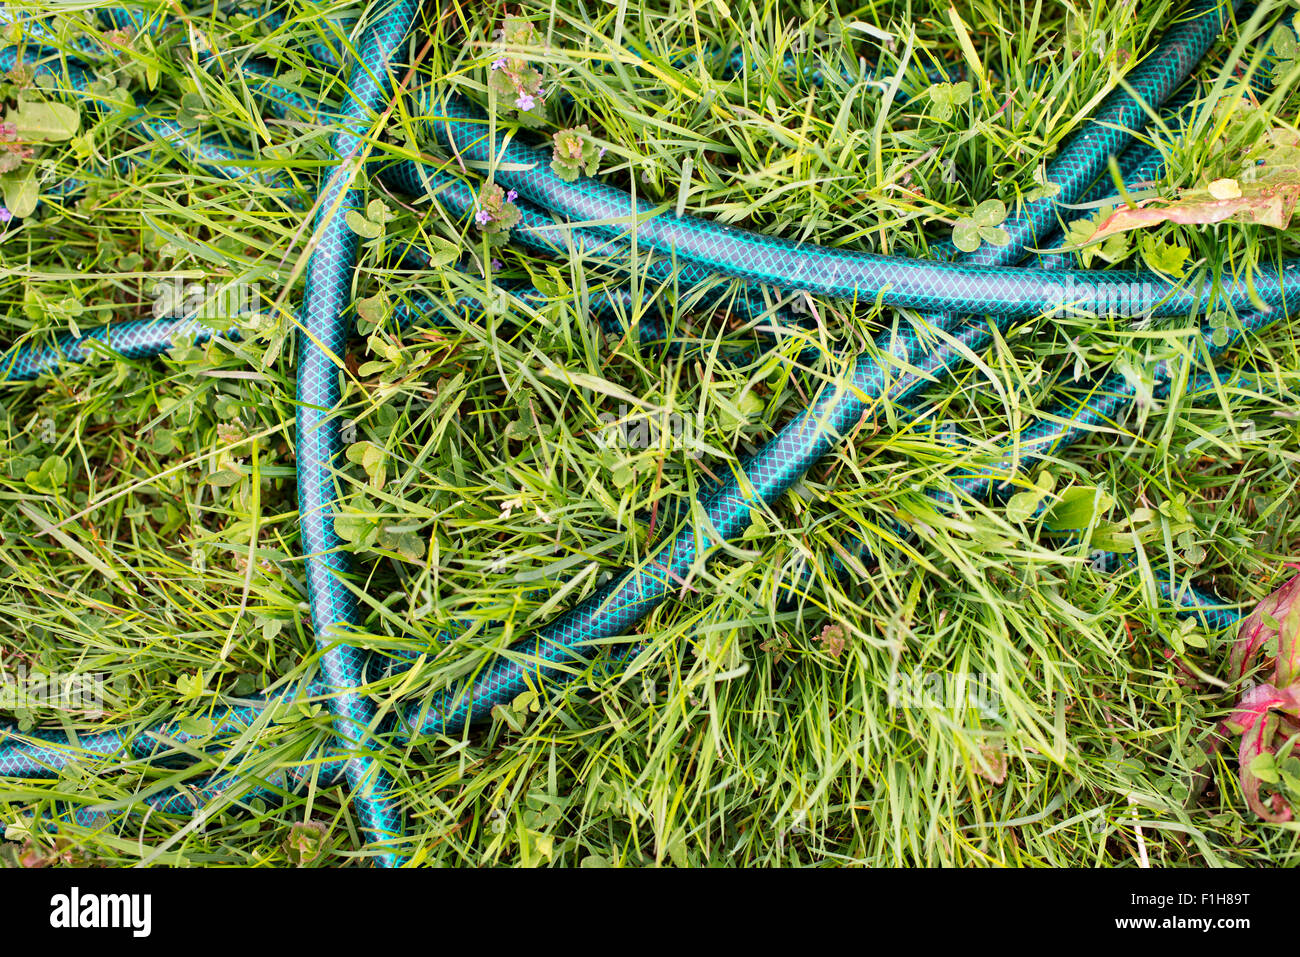 Vue de dessus du tuyau de jardin en plastique allongé sur l'herbe verte. Banque D'Images